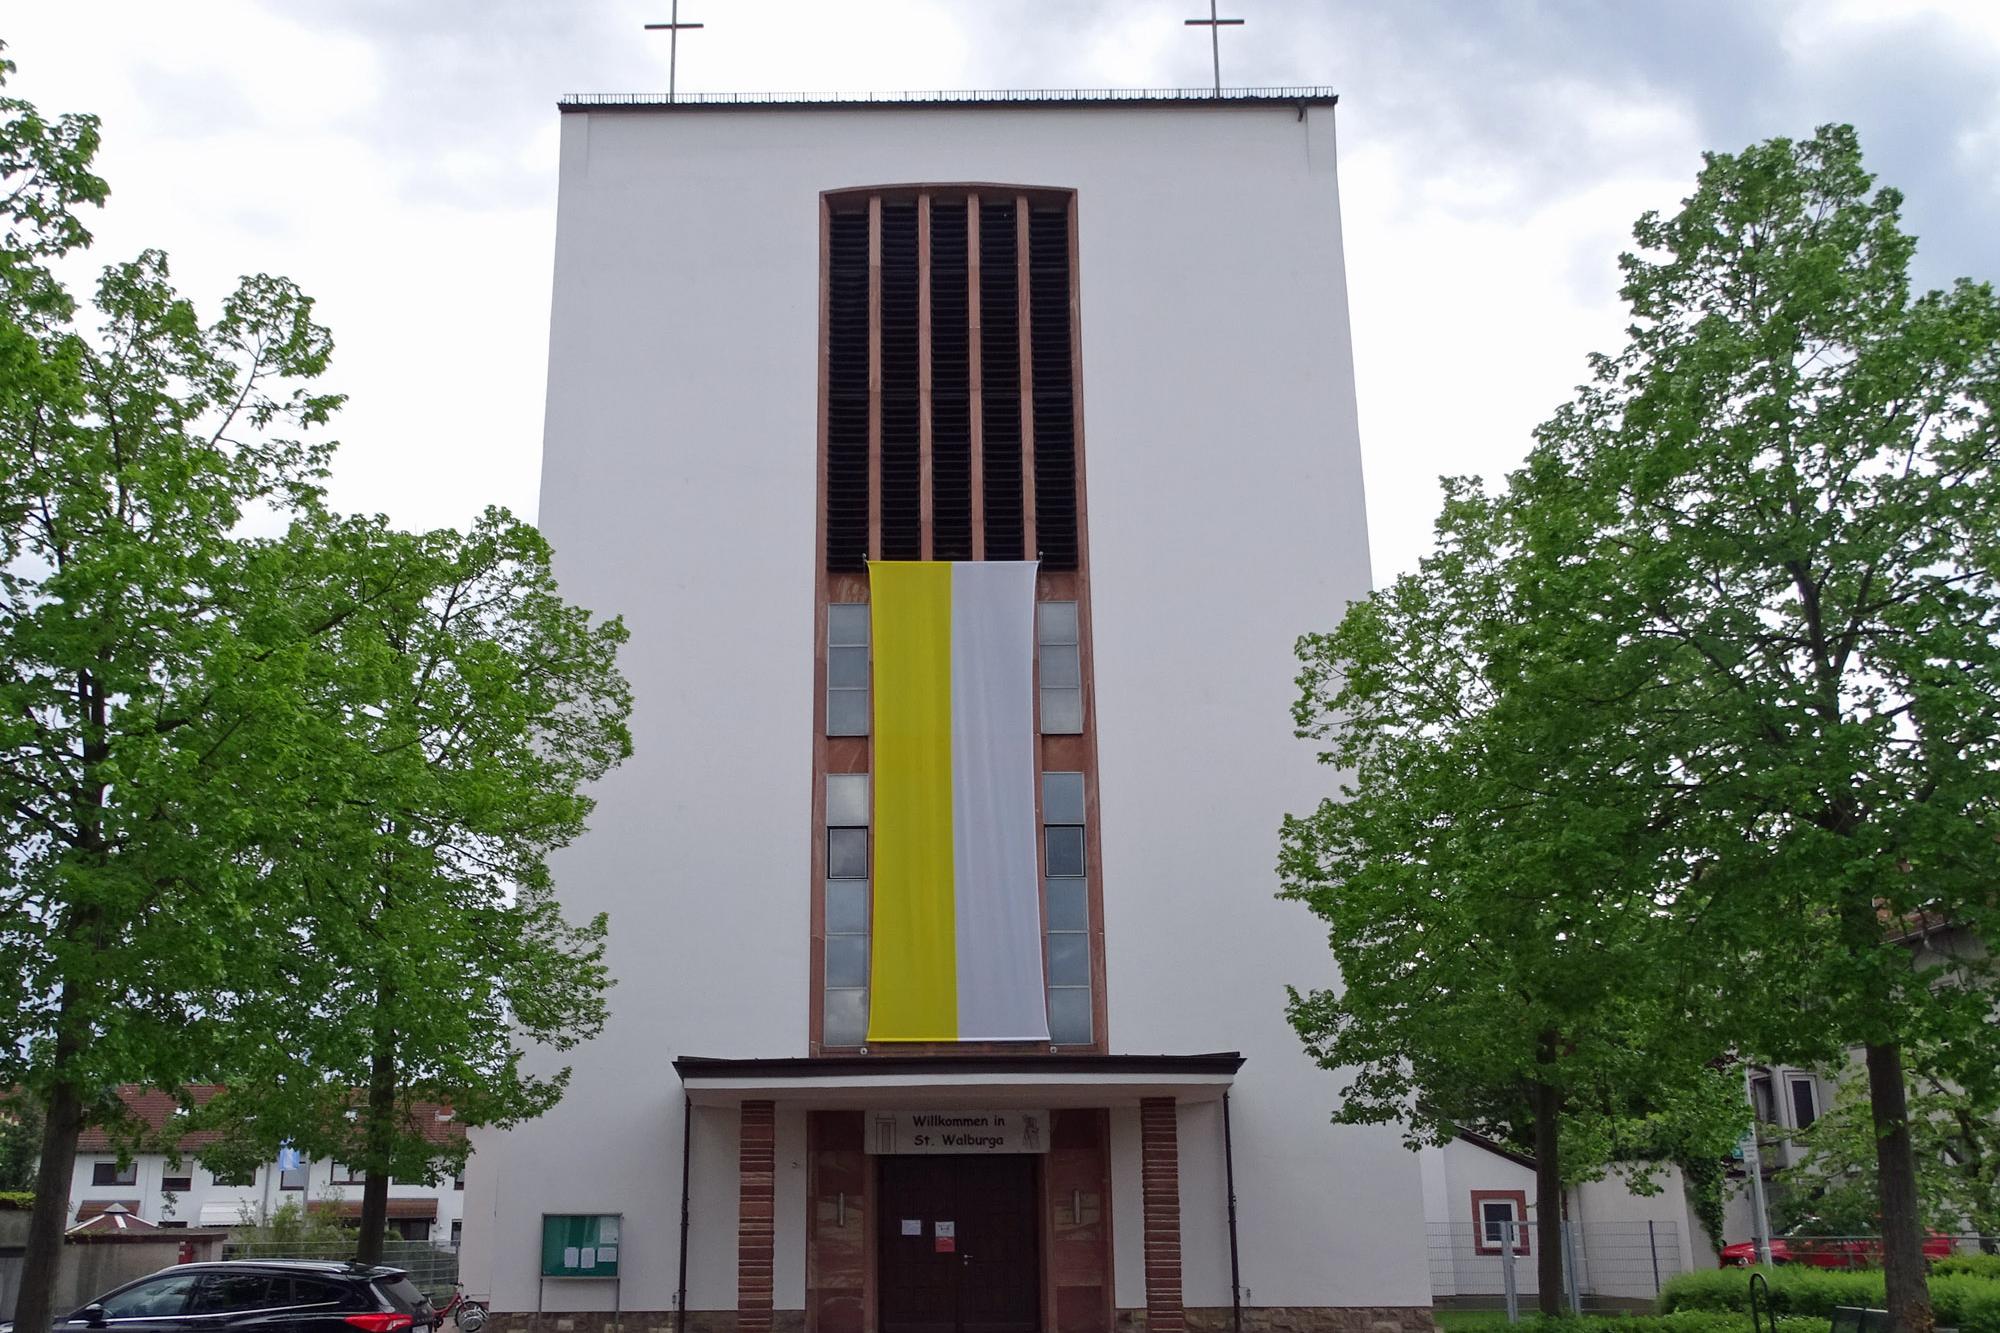 Kirche St. Walburga Groß-Gerau